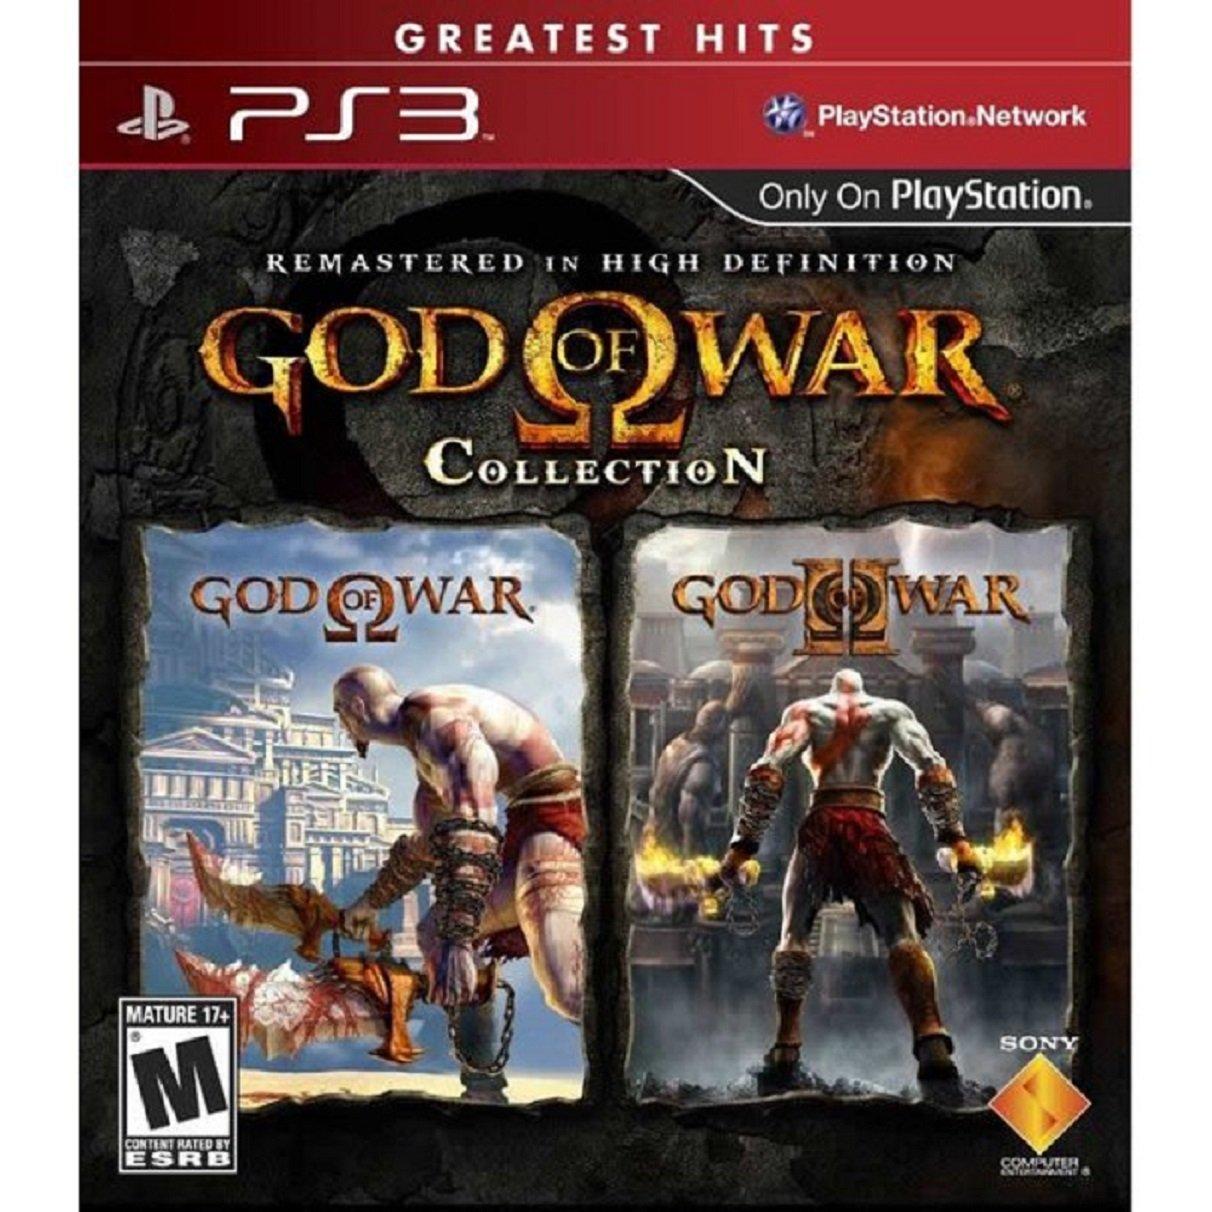 god of war 3 ps3 gamestop